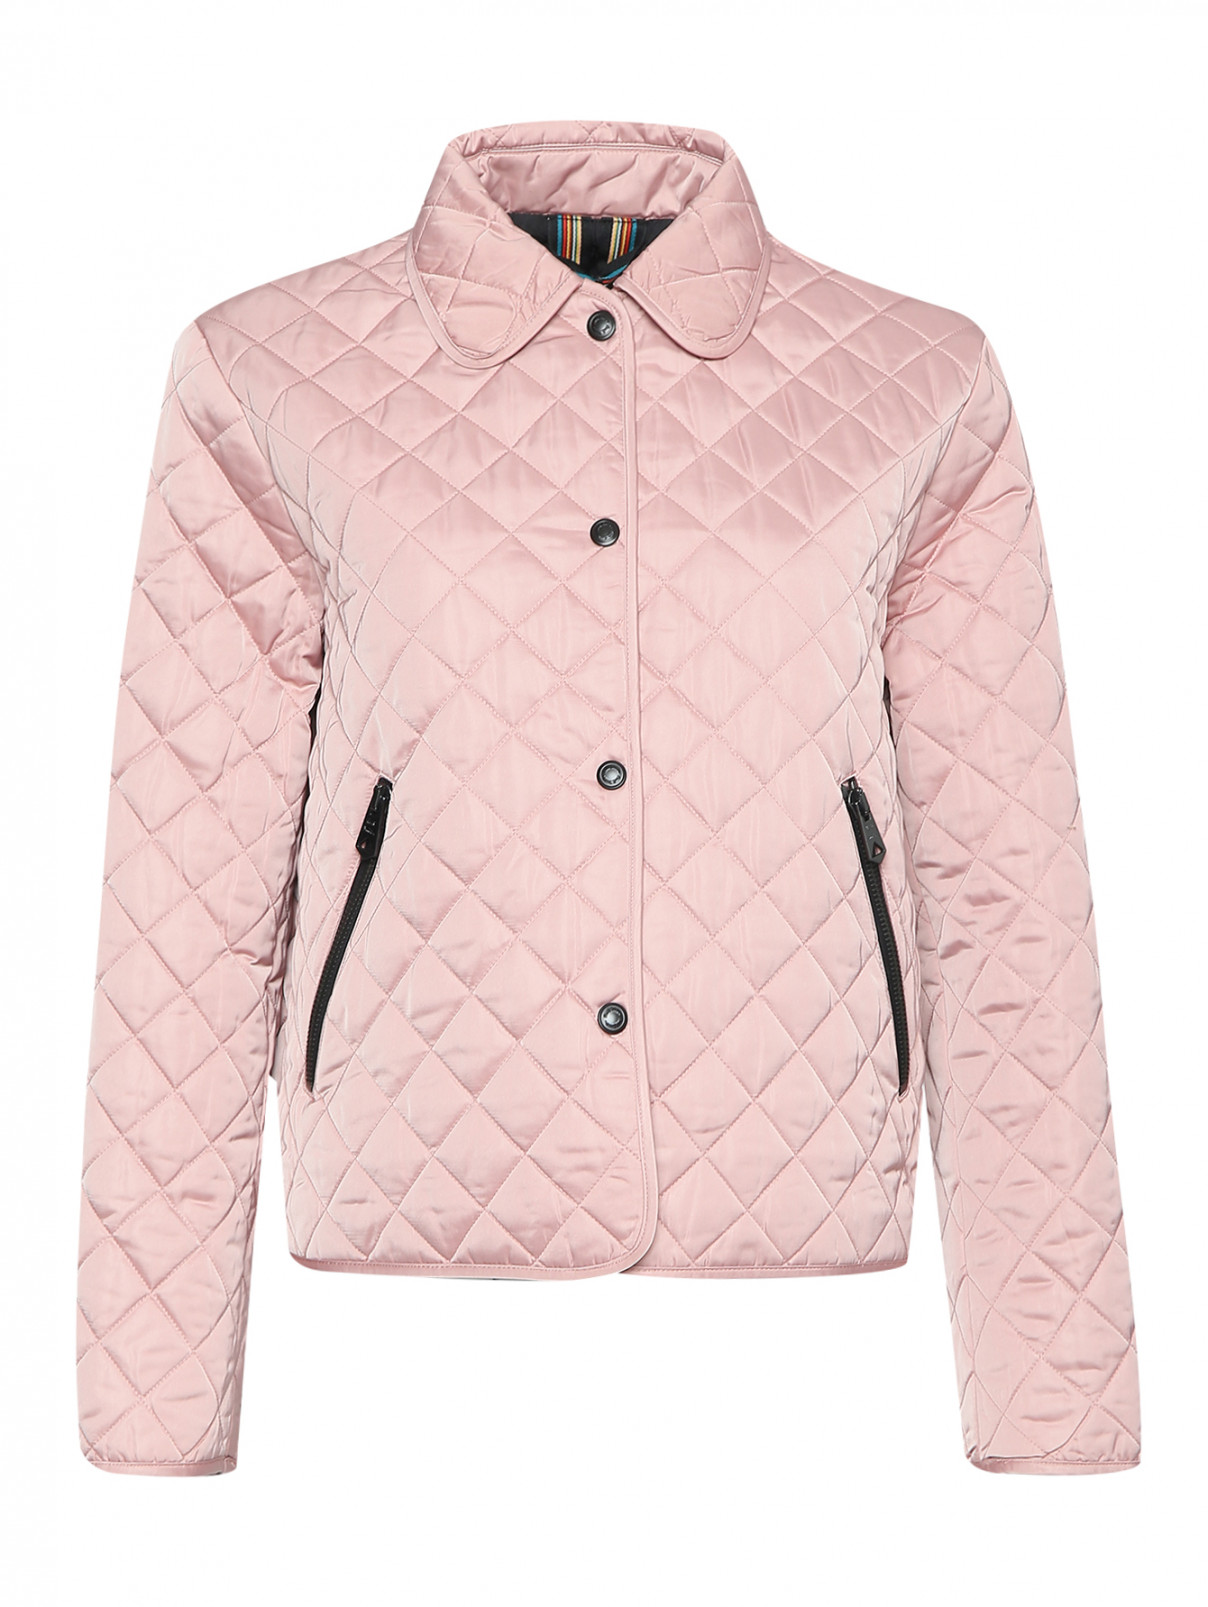 Стеганая куртка с карманами Paul Smith  –  Общий вид  – Цвет:  Розовый